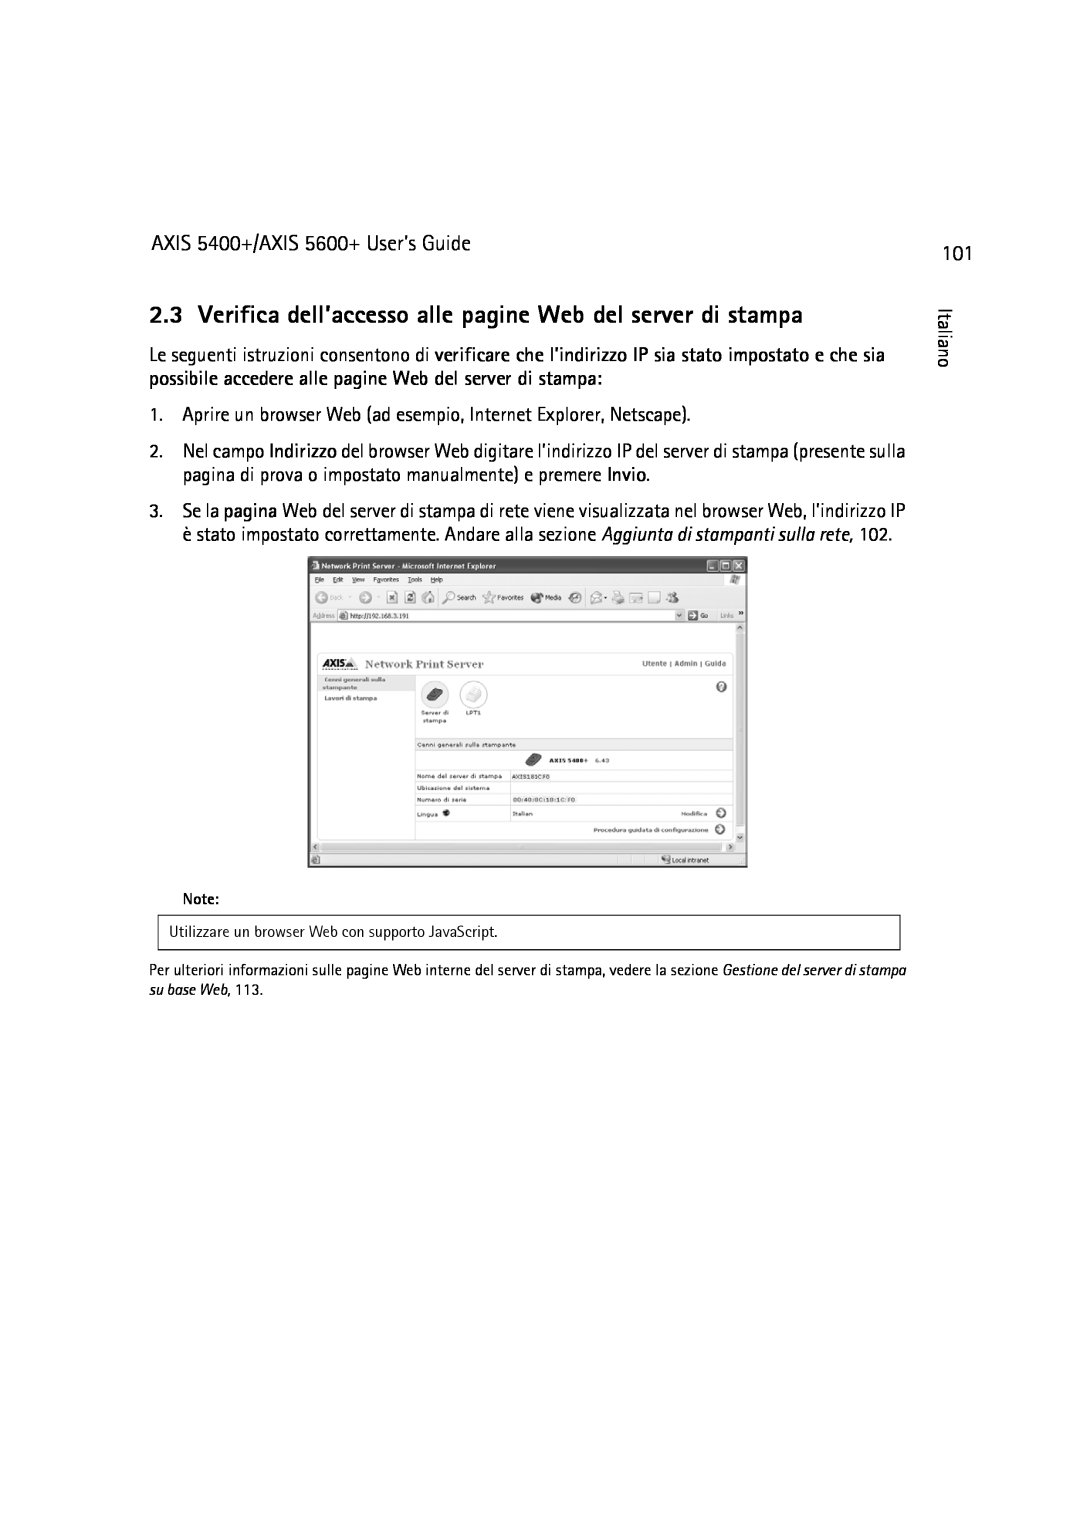 Dell manual Verifica dell’accesso alle pagine Web del server di stampa, AXIS 5400+/AXIS 5600+ User’s Guide 